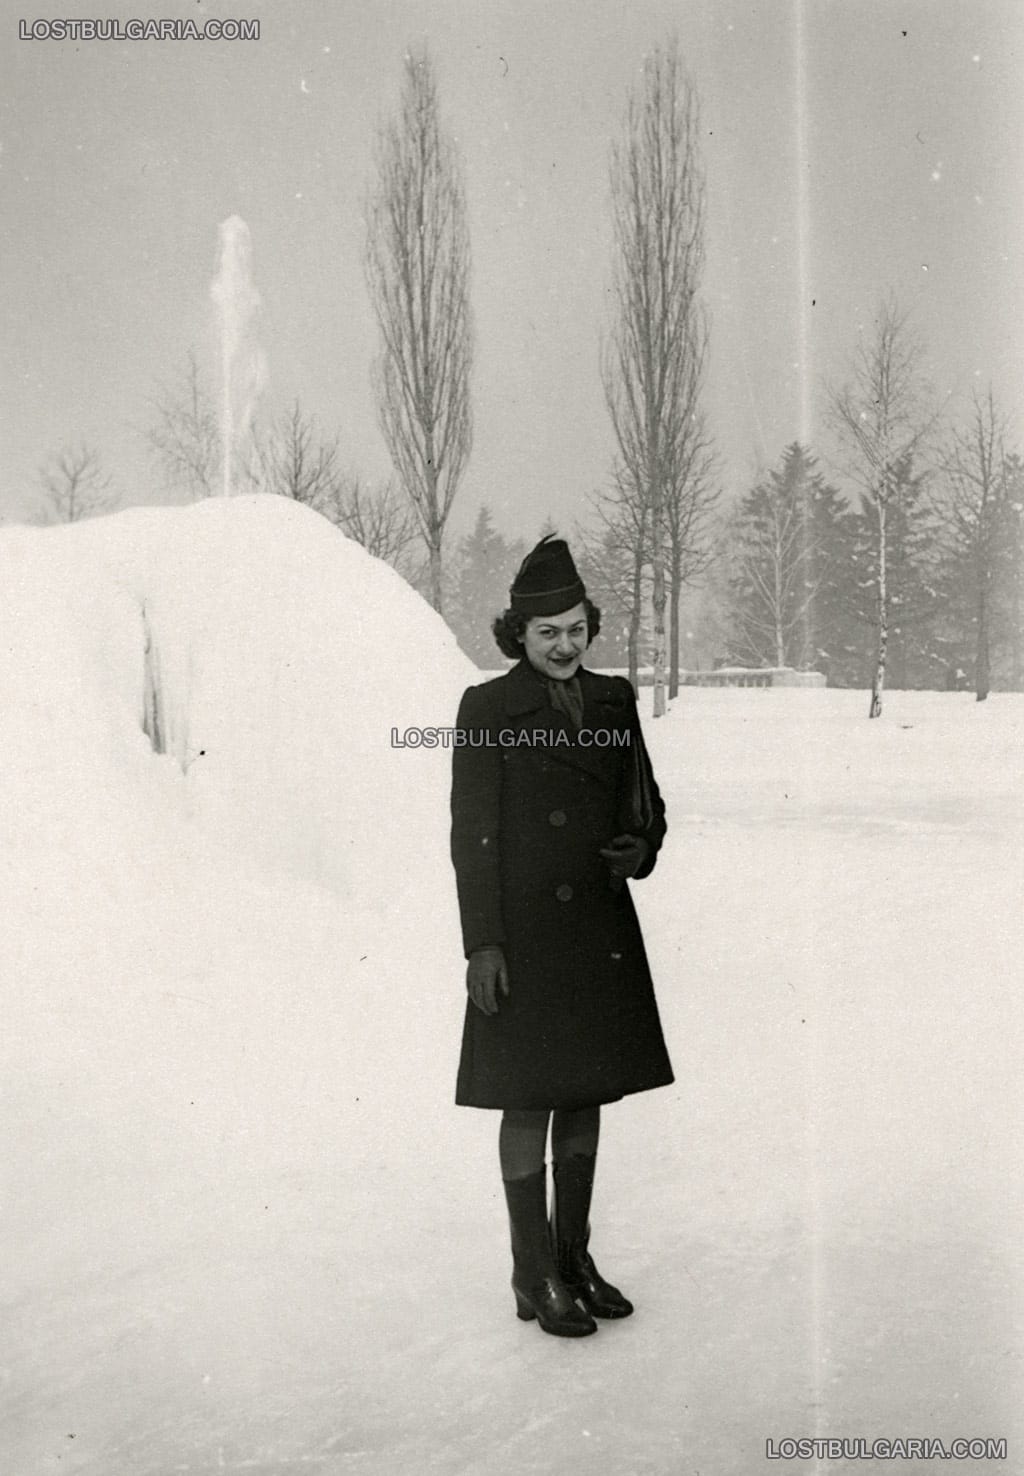 Снимка за спомен на елегантно облечена млада дама в Борисовата градина през зимата, София 1936 г.